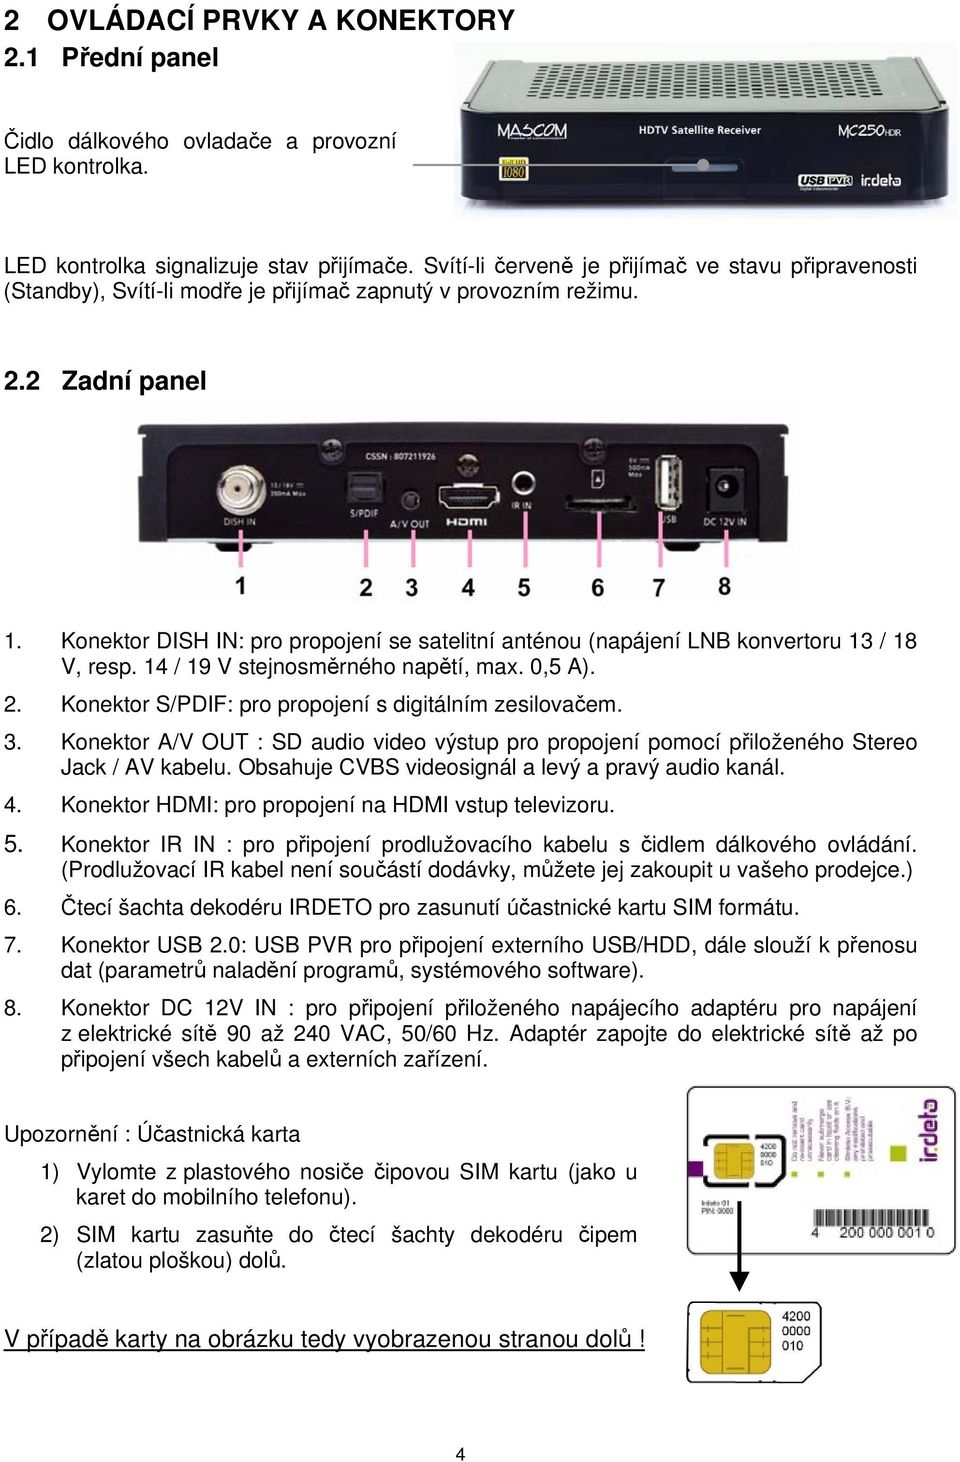 Konektor DISH IN: pro propojení se satelitní anténou (napájení LNB konvertoru 13 / 18 V, resp. 14 / 19 V stejnosměrného napětí, max. 0,5 A). 2. Konektor S/PDIF: pro propojení s digitálním zesilovačem.